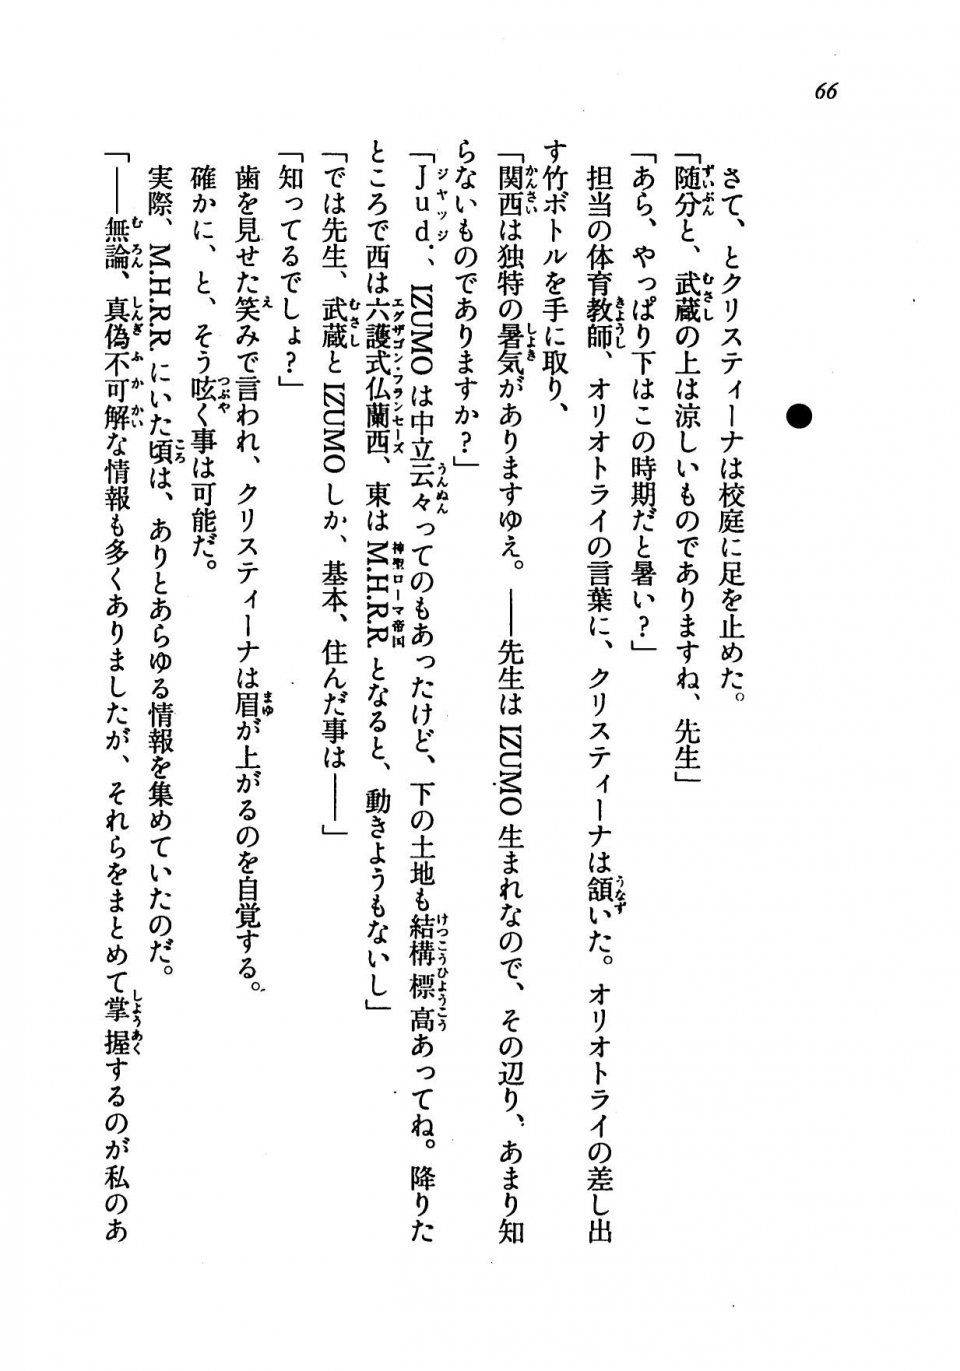 Kyoukai Senjou no Horizon LN Vol 19(8A) - Photo #66